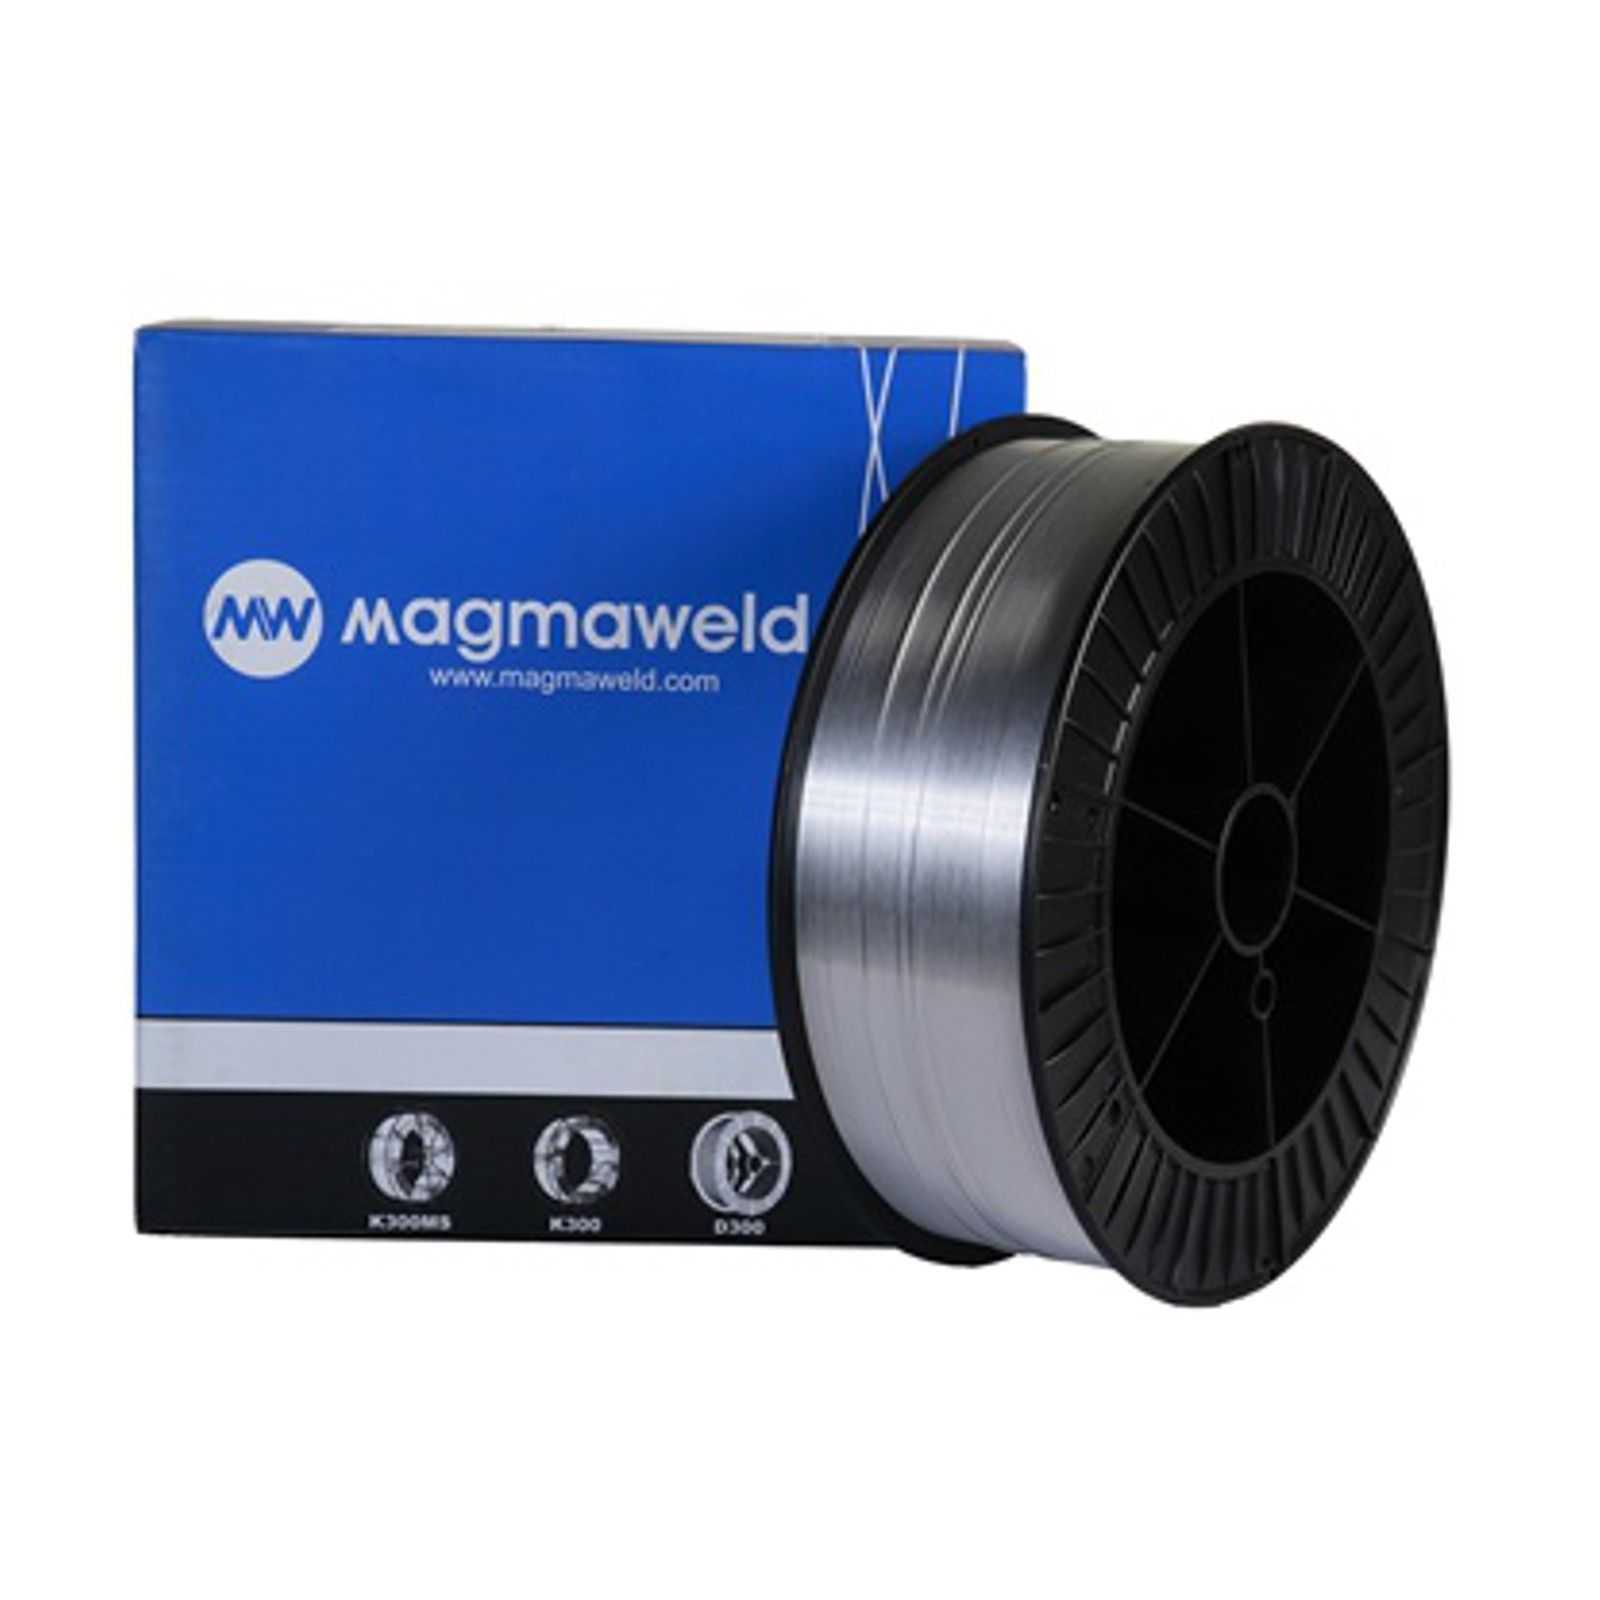 MAGMAWELD AWS 5356 AlMg 5 (3.3556 ) MIG Schweißdraht Aluminium Ø 1,2mm - 2.0 kg (S200 Spule) - M5356.1.2.02 -  - 36,22 € - 